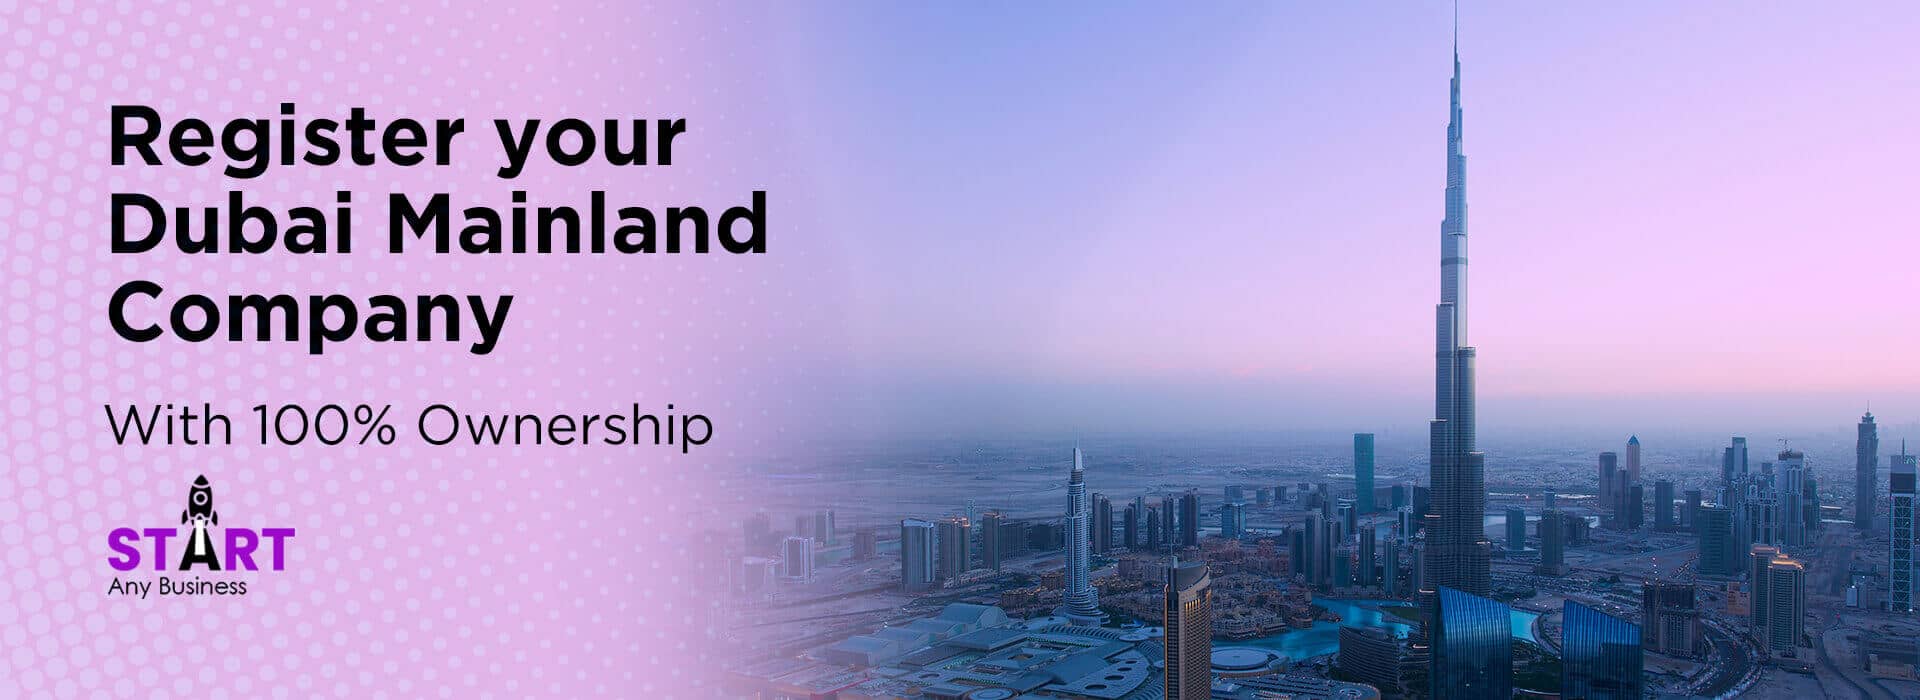 Register your Dubai Mainland Company